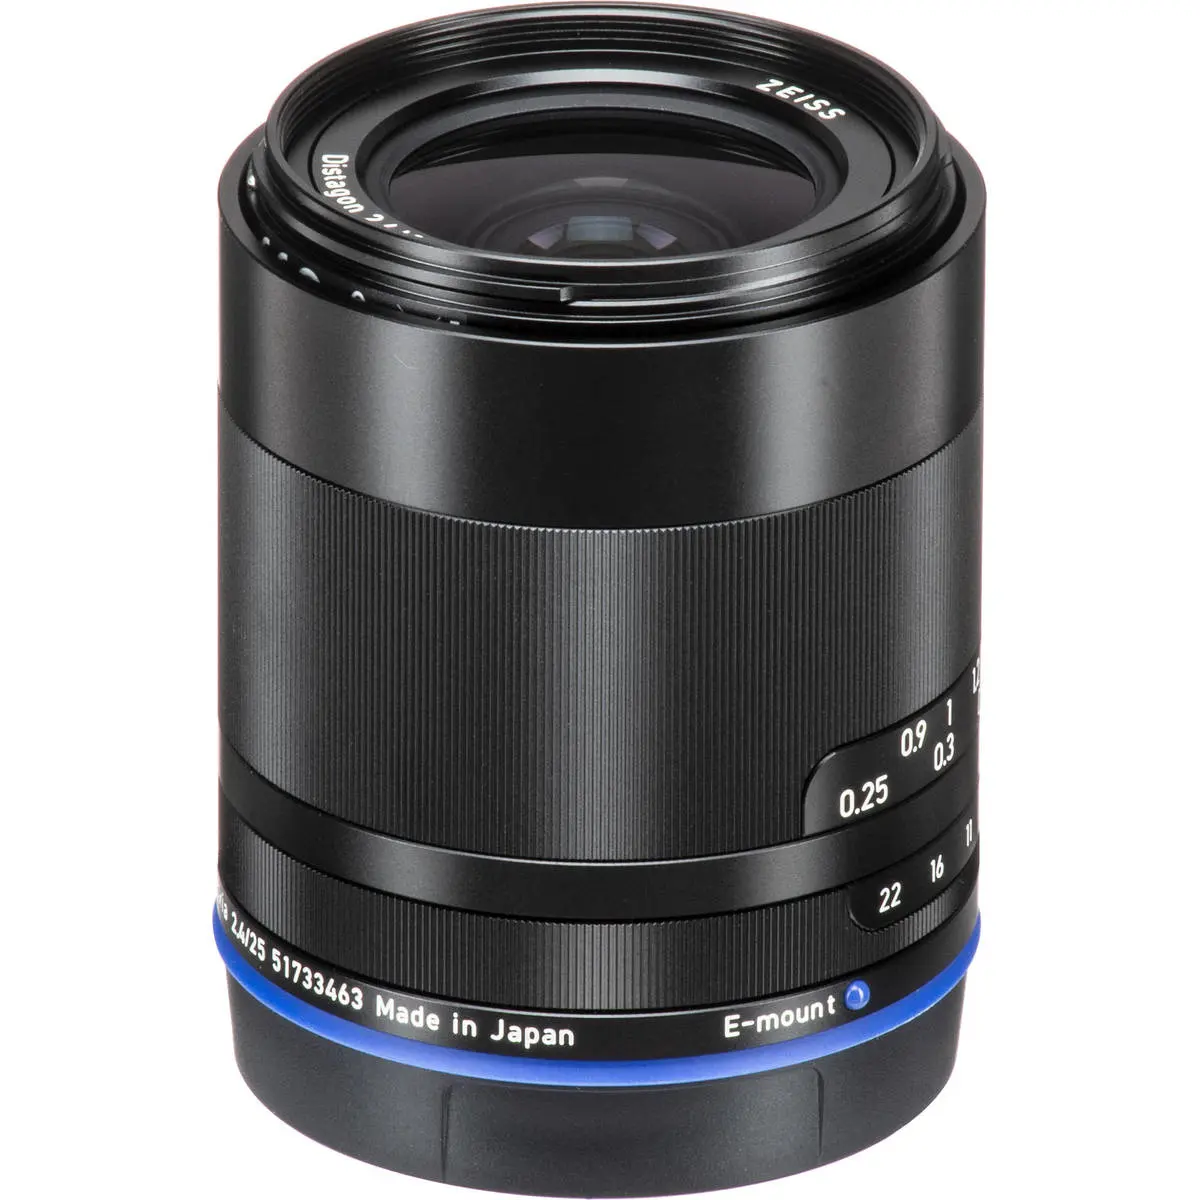 6. Carl Zeiss Loxia 2.4/25 (Sony FE) Lens